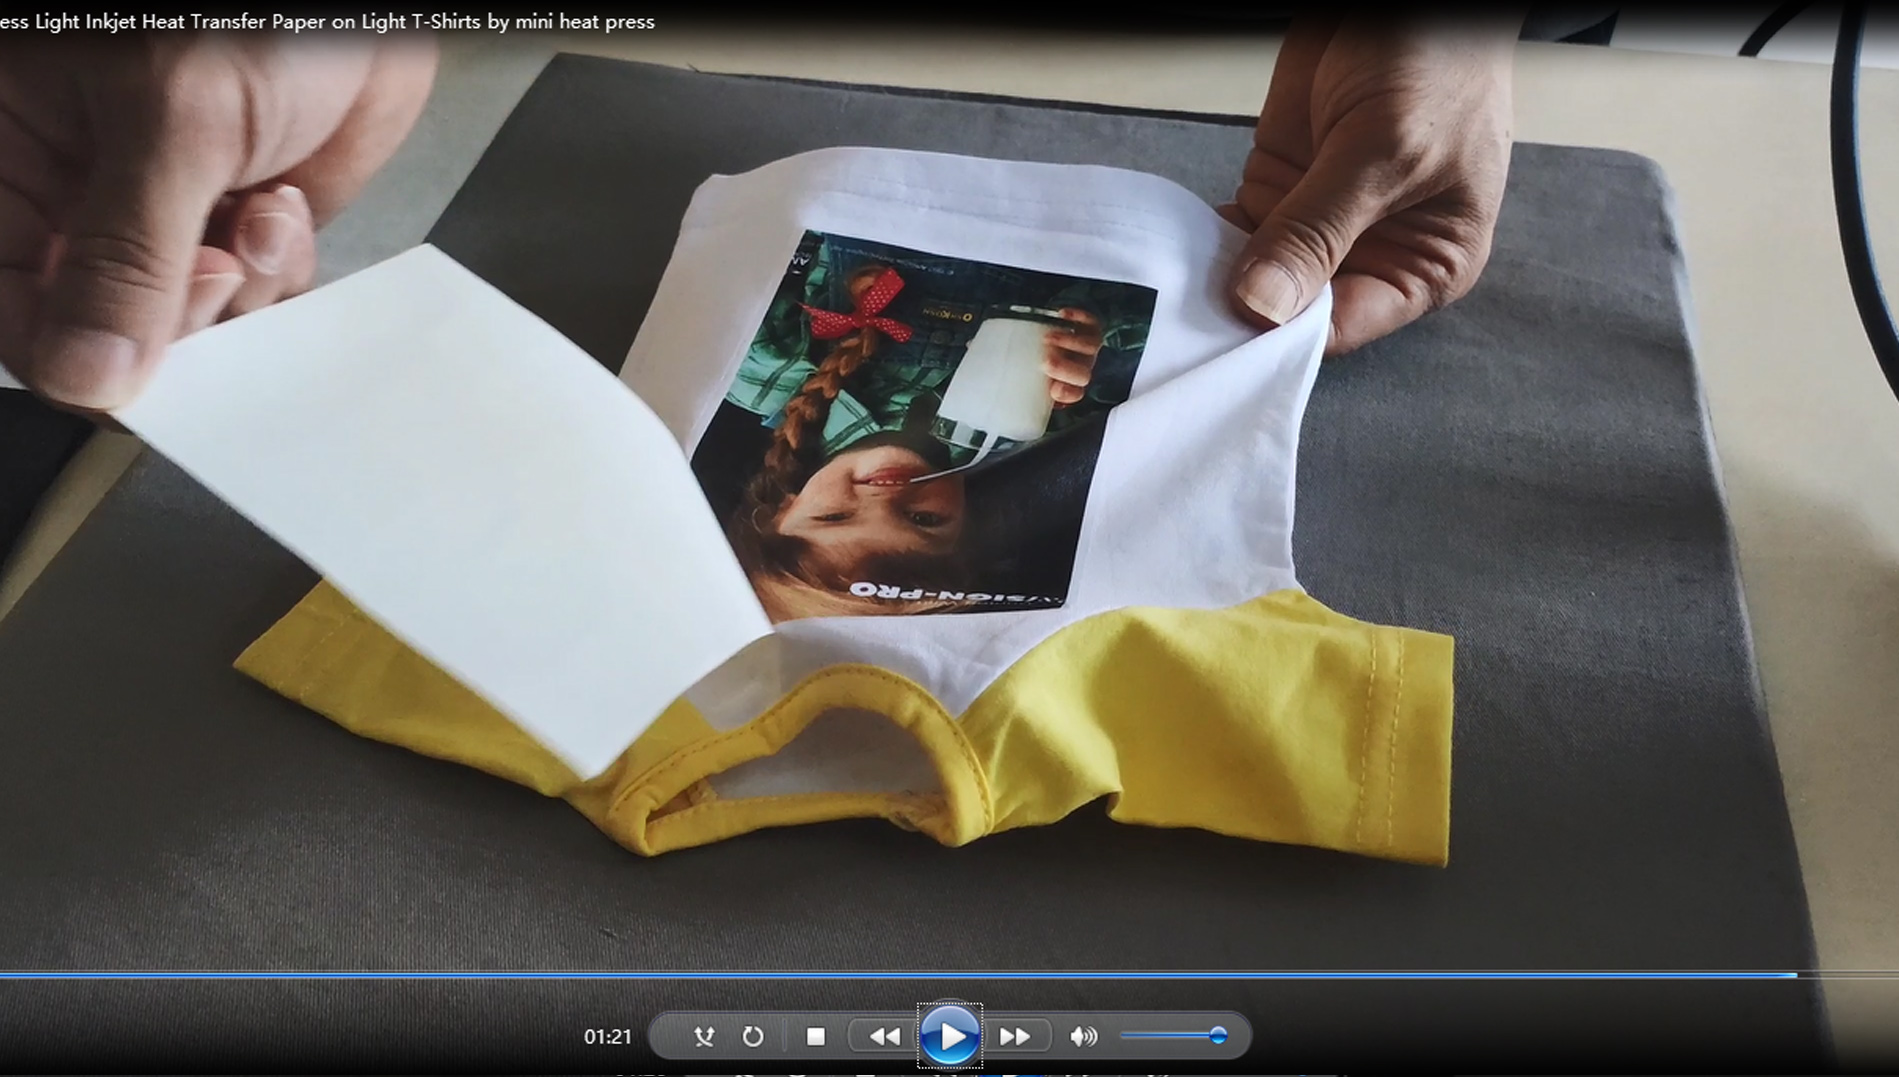 Slik trykker du Light Inkjet Heat Transfer Paper på Light T-Shirts fra mini varmepresse